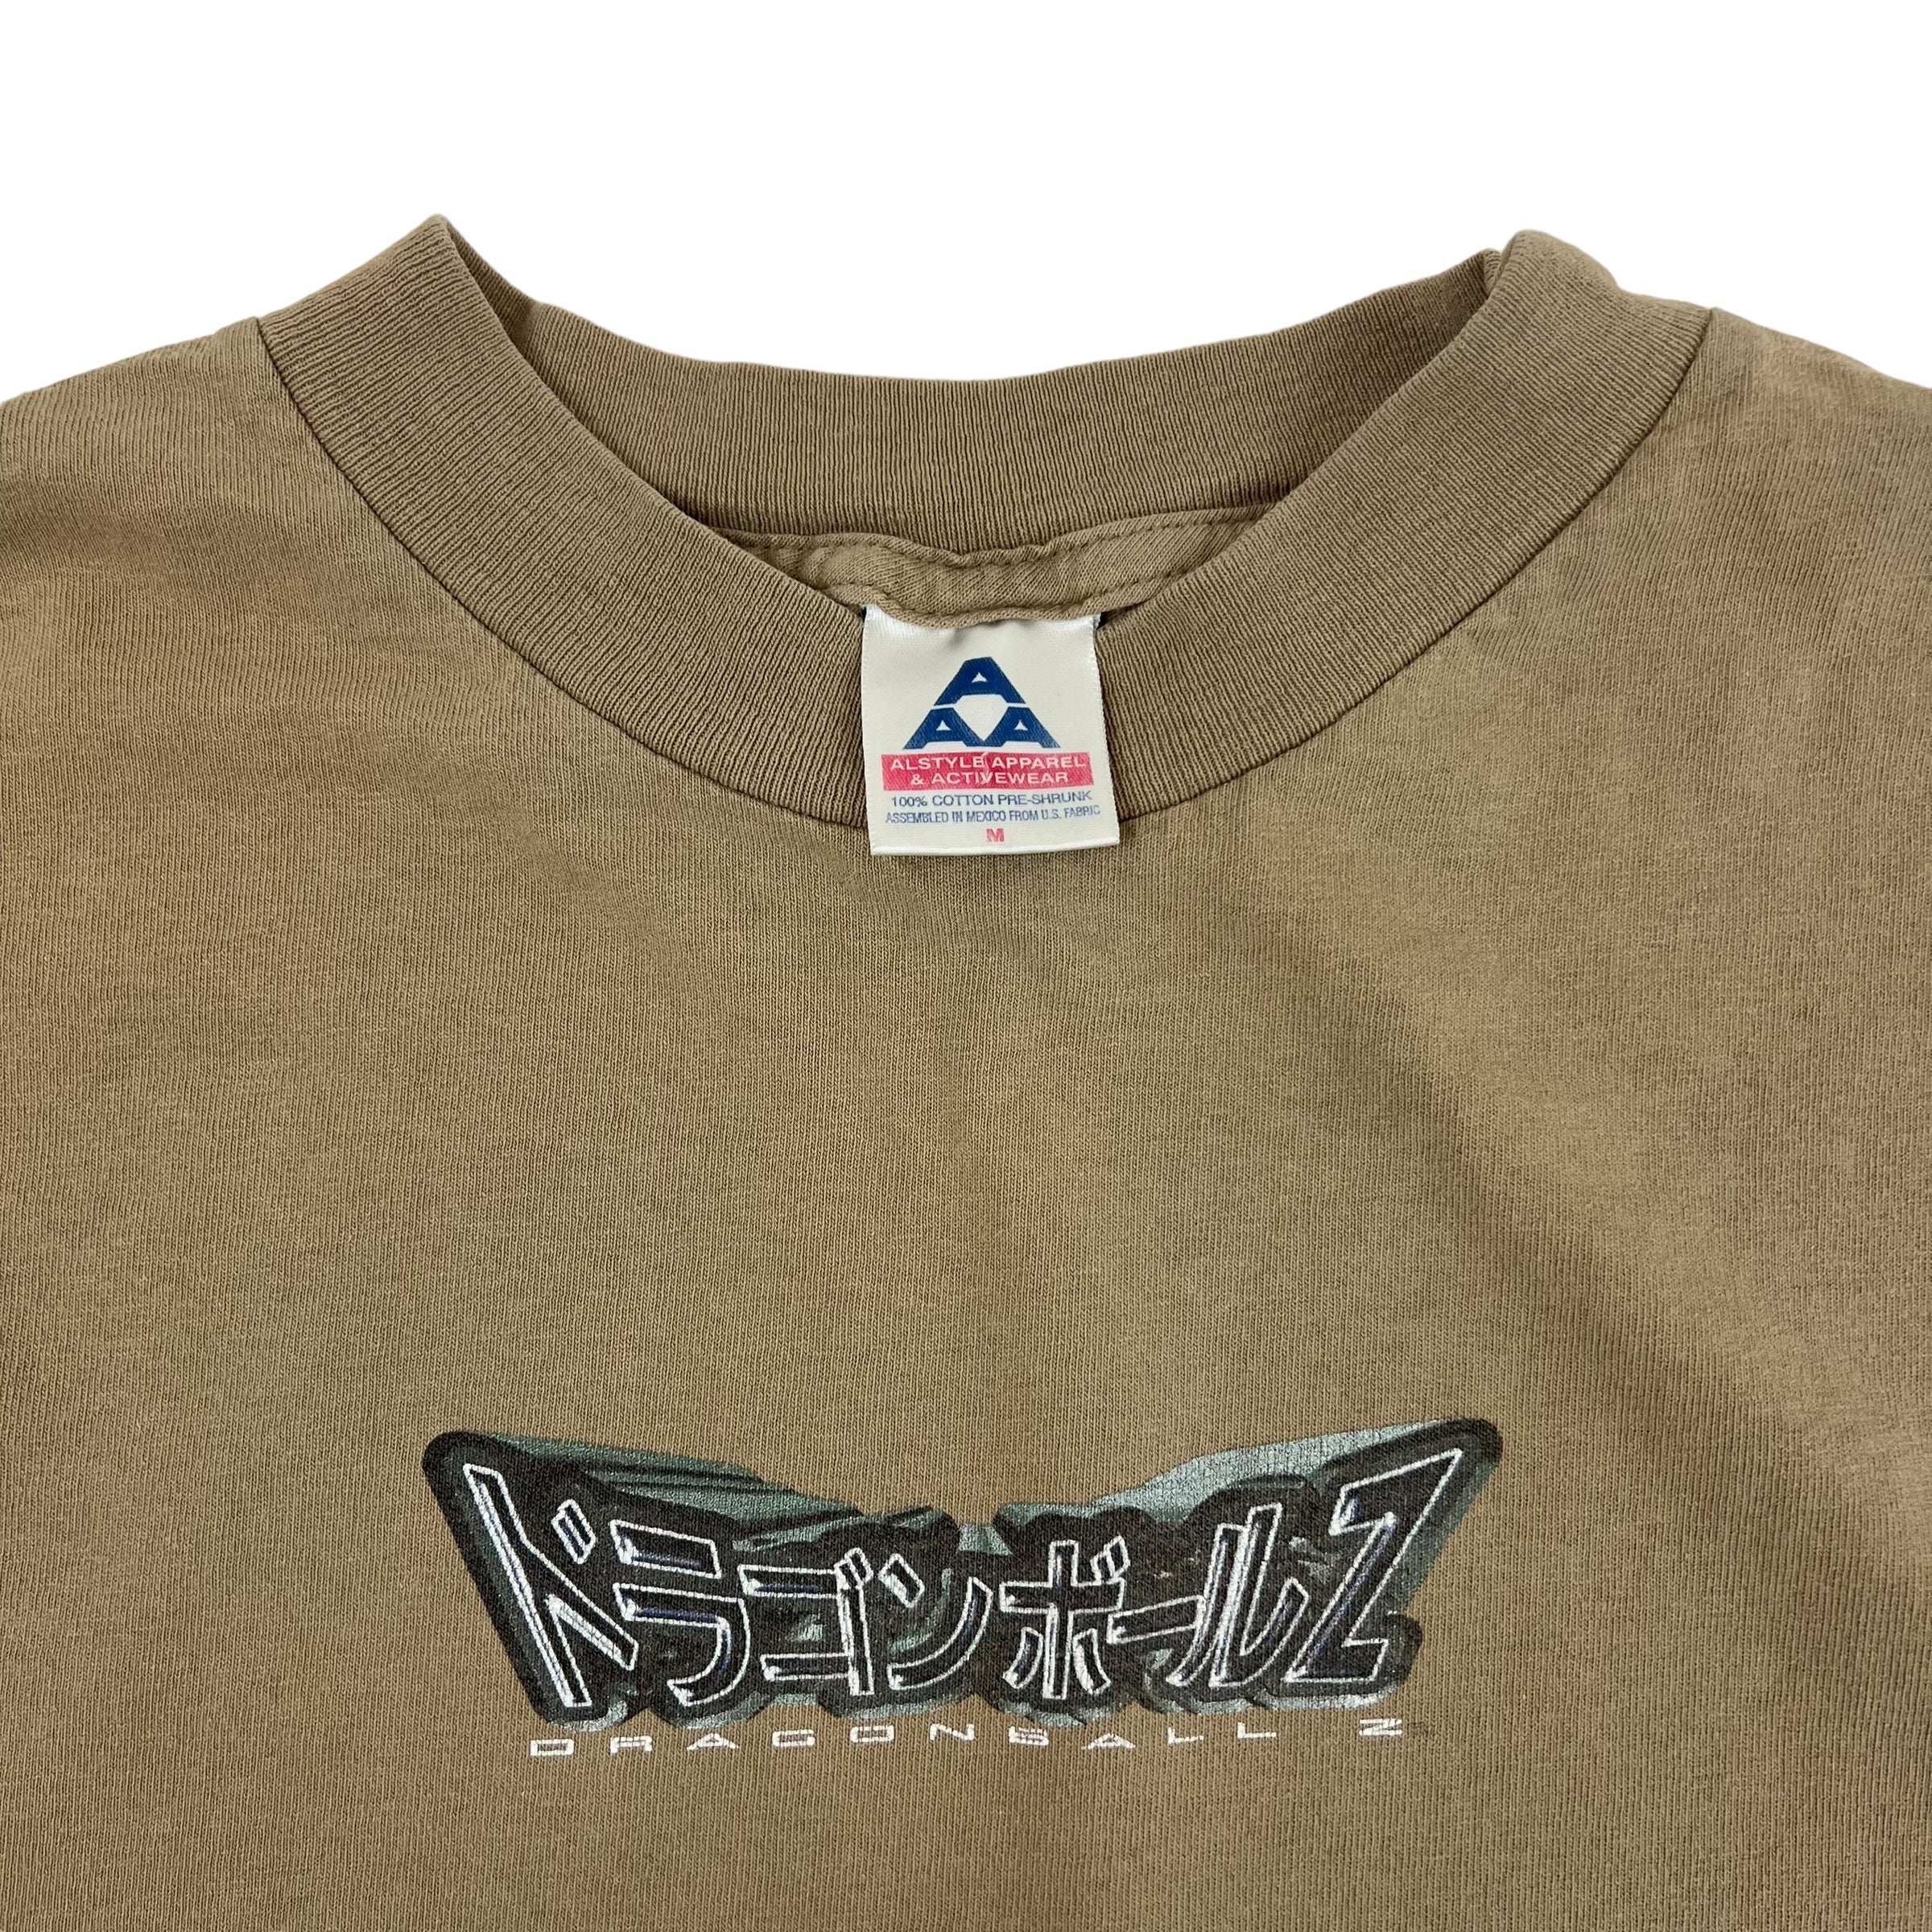 1998 Dragonball-Z T-Shirt Tan